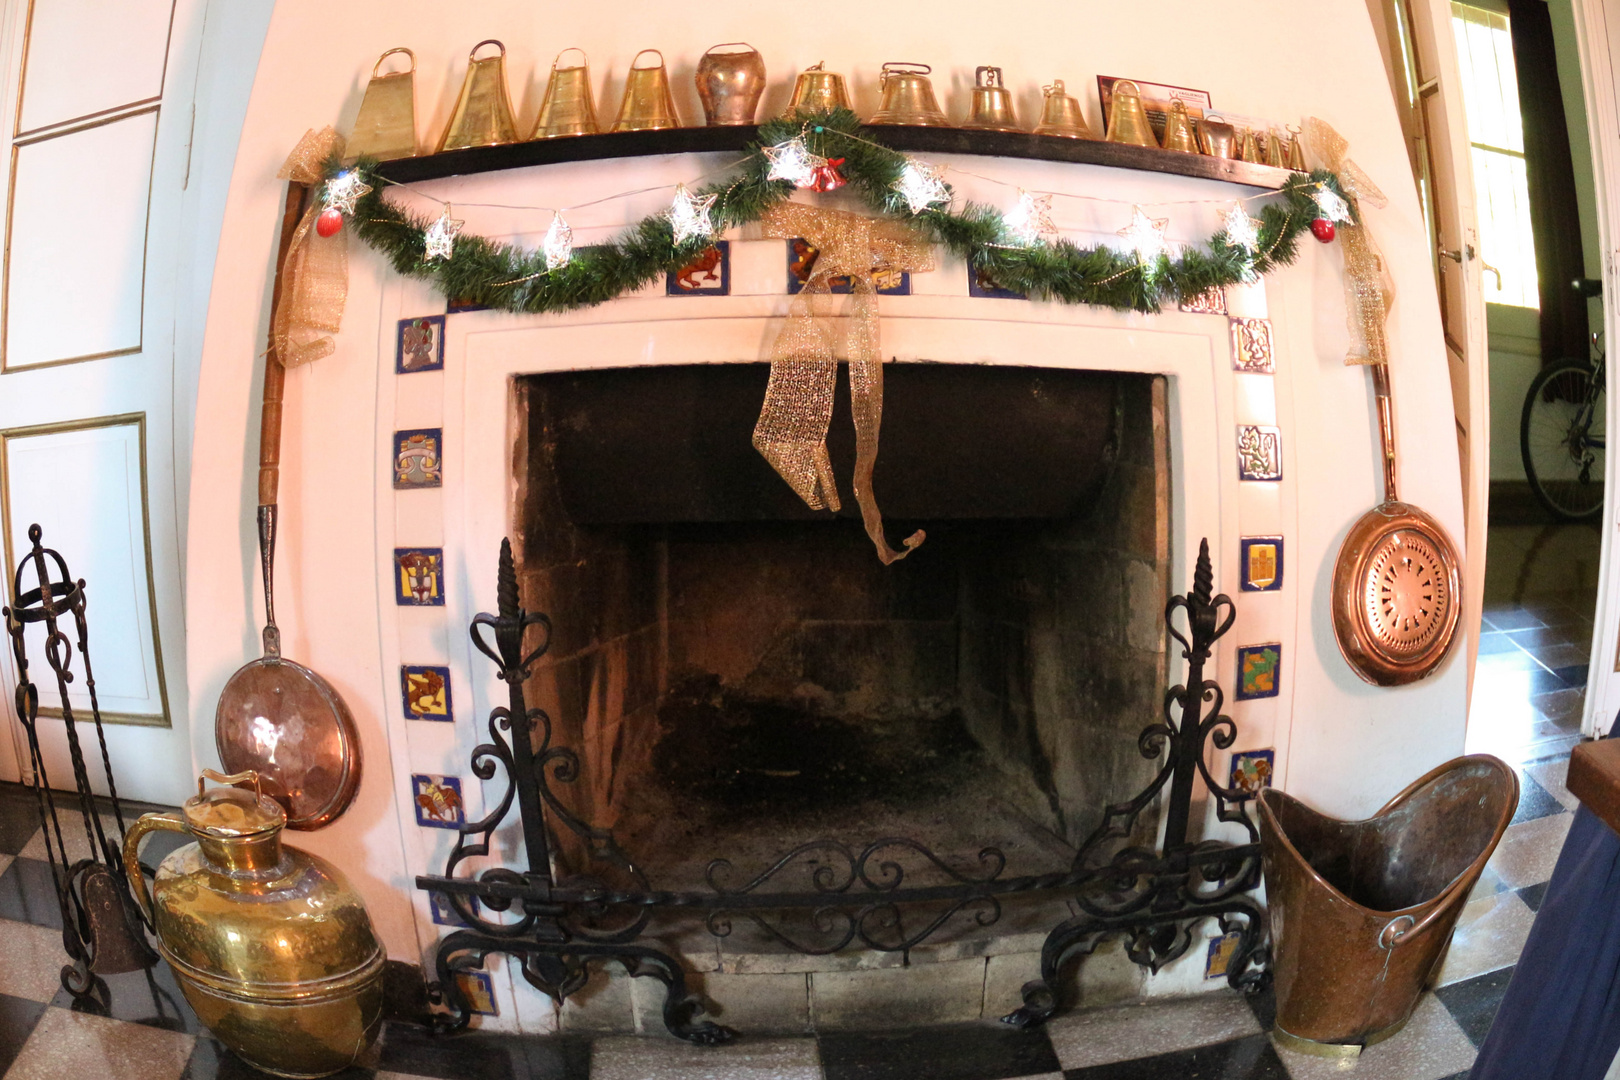 Un navidad sin fuego en el hogar